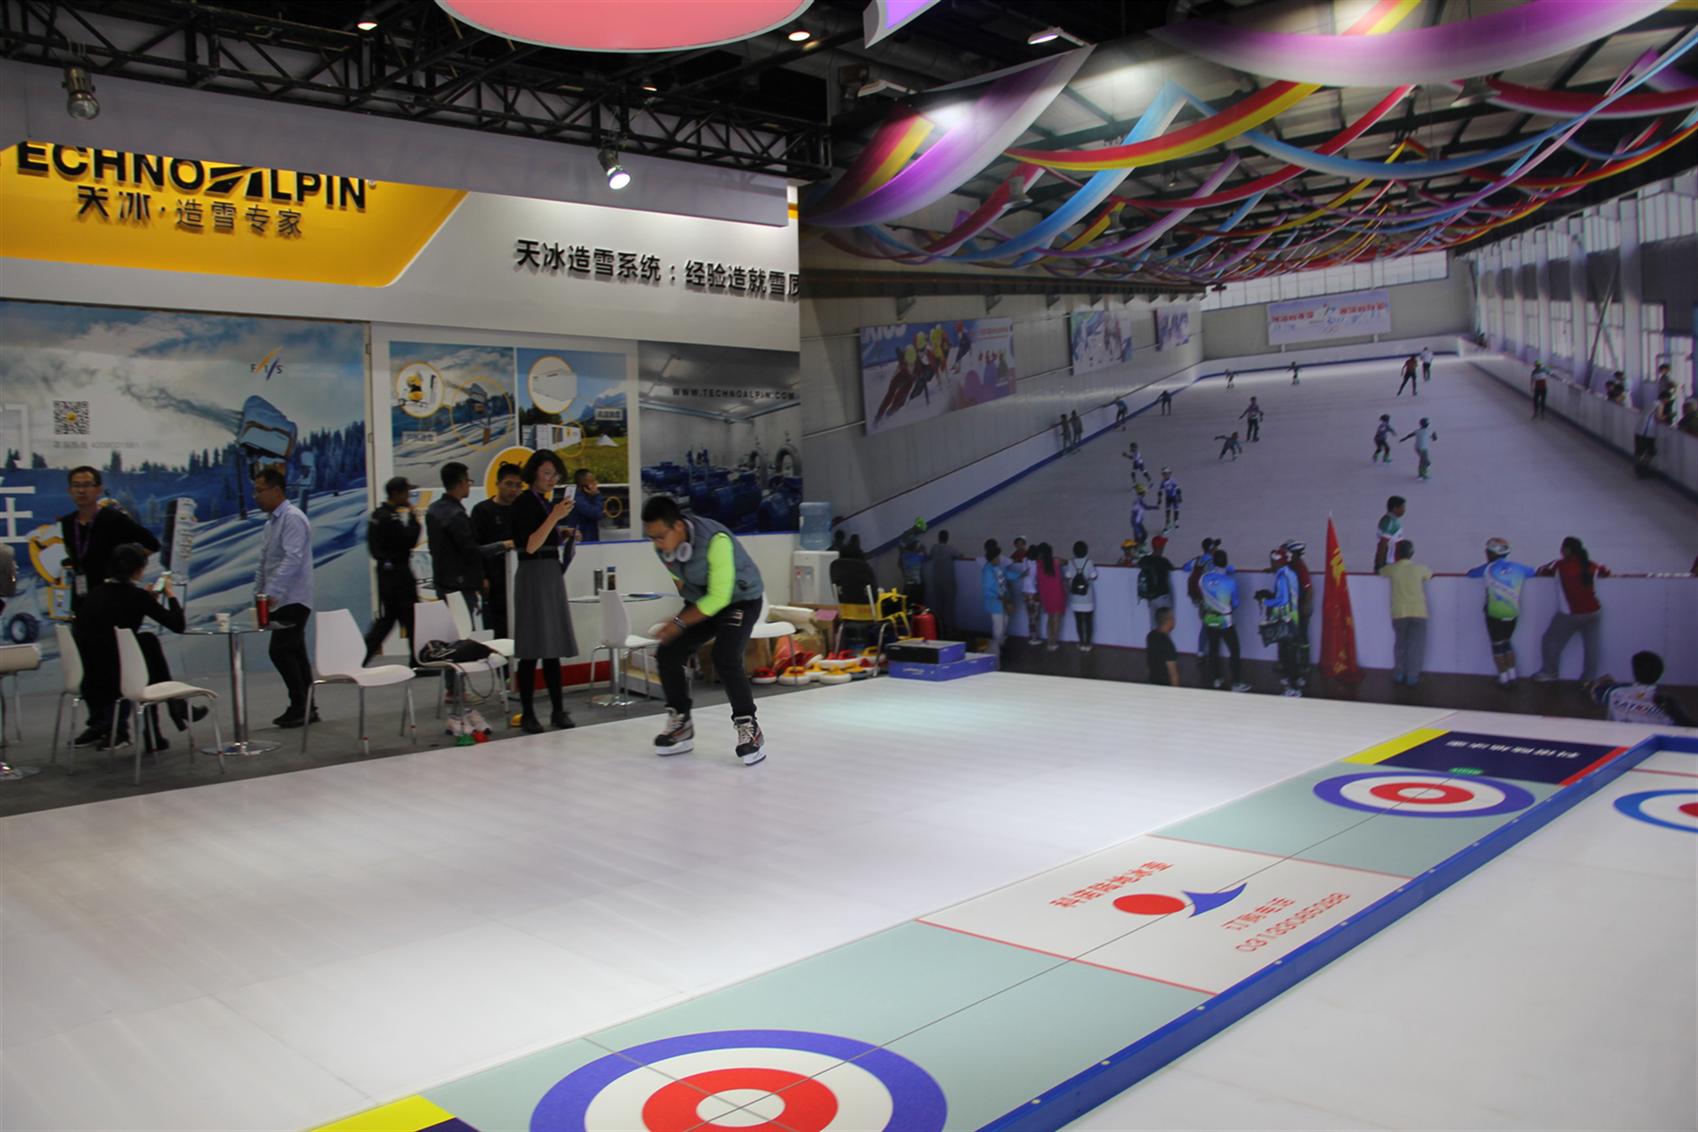 武汉滑冰训练必备仿真冰场人造滑冰场,假冰冰板